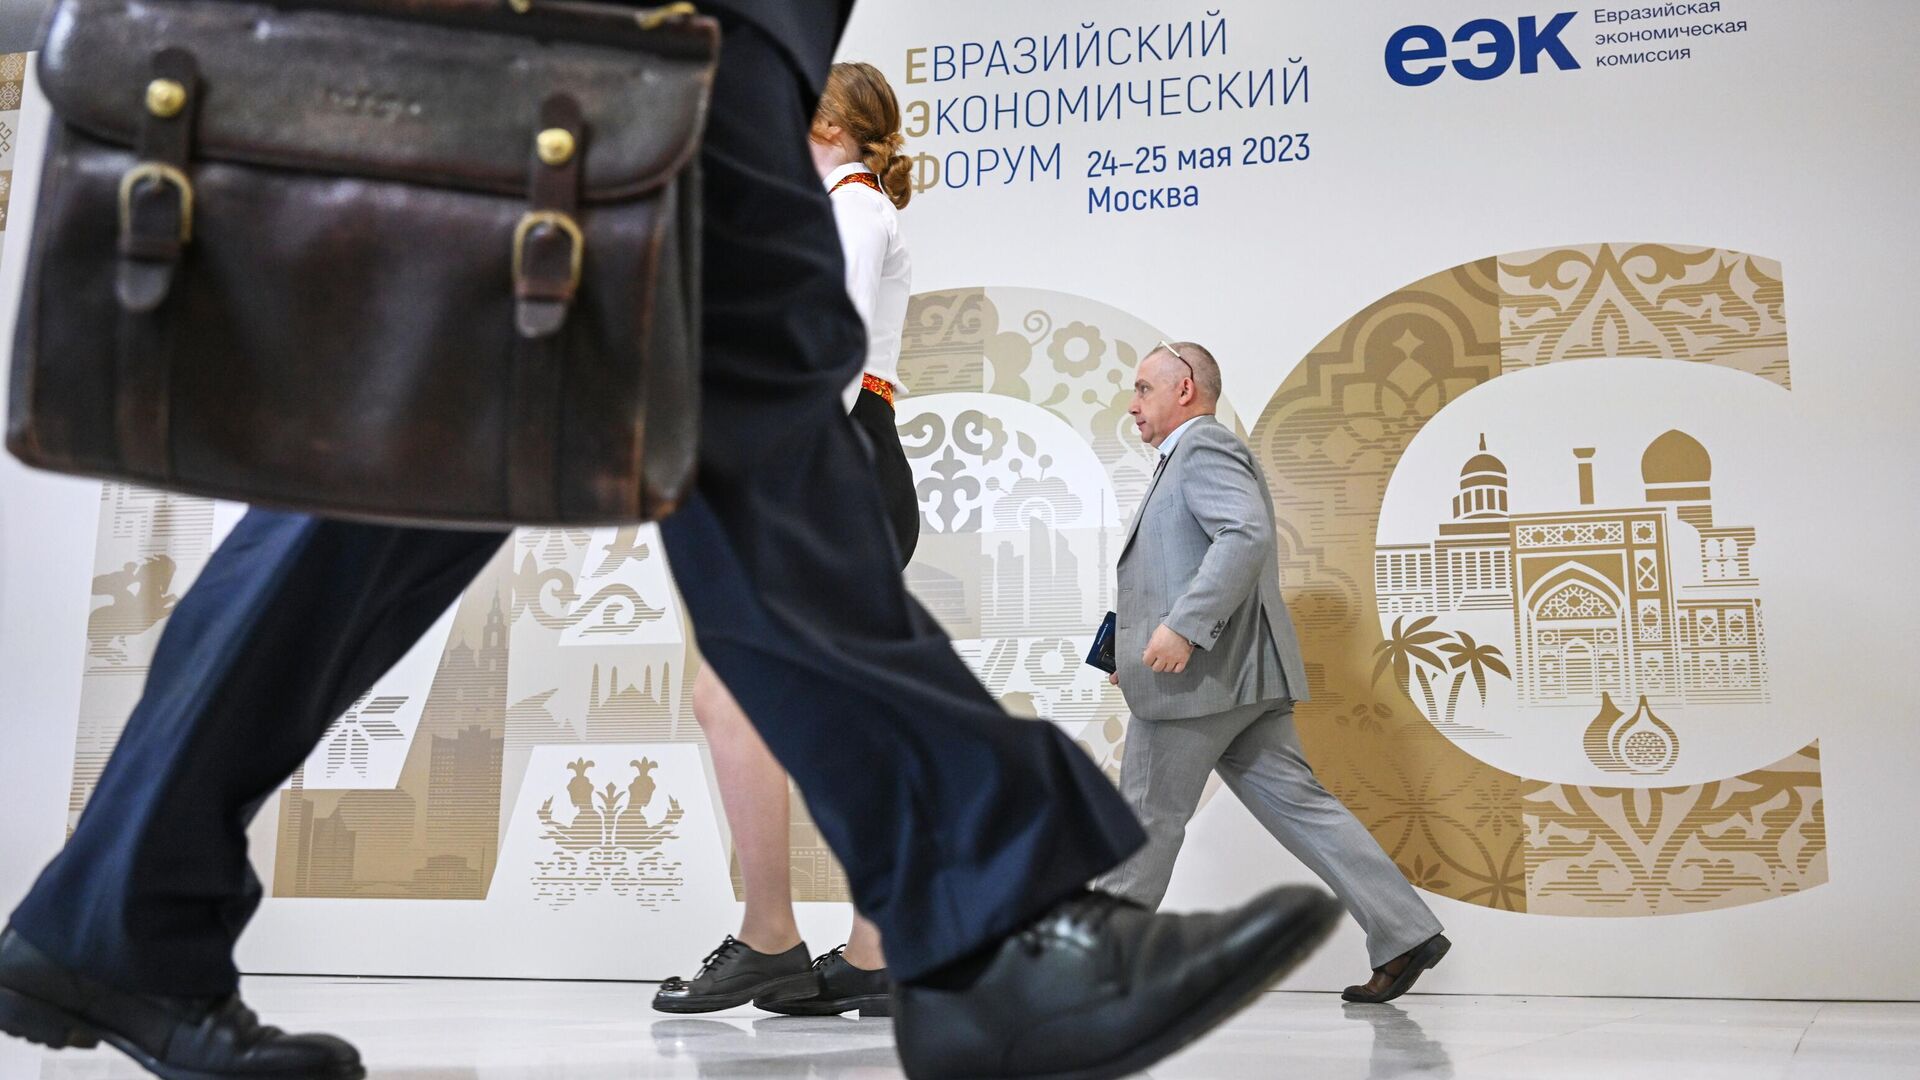 Участники проходят рядом со стендом с символикой Евразийского экономического форума в Москве - РИА Новости, 1920, 25.05.2023